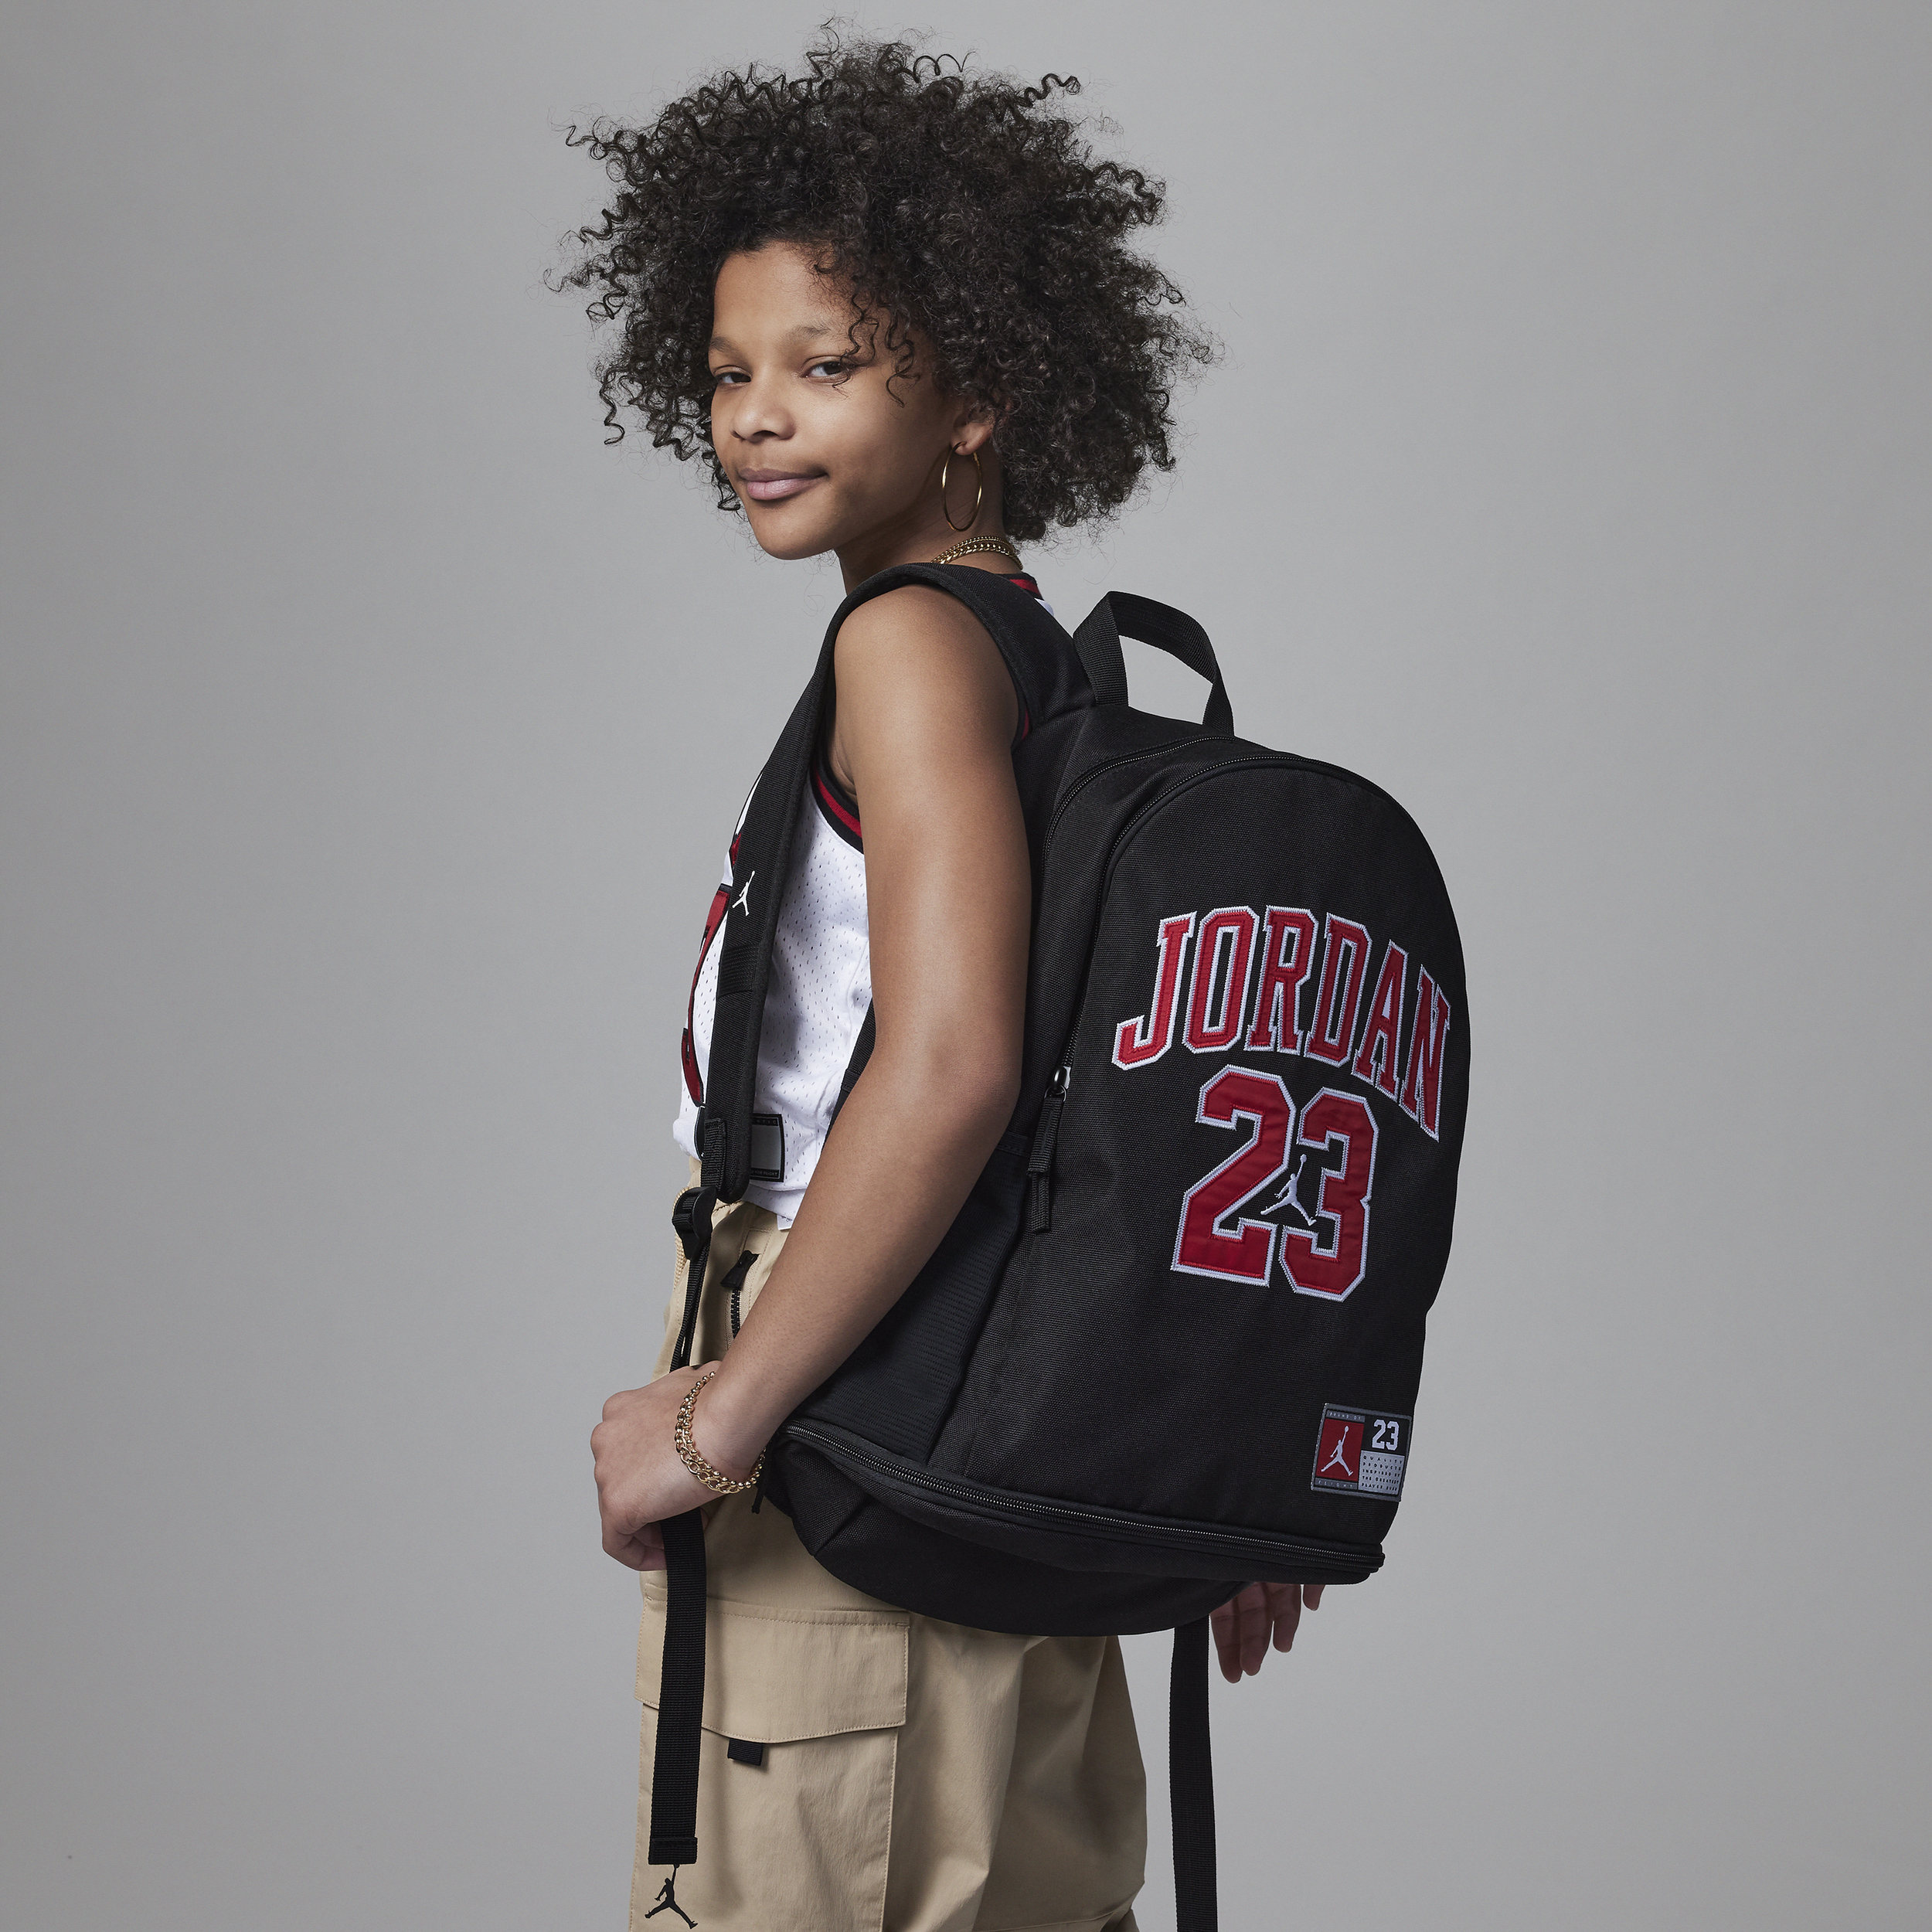 Jordan Jersey Backpack rugzak voor kids (27 liter) - Zwart